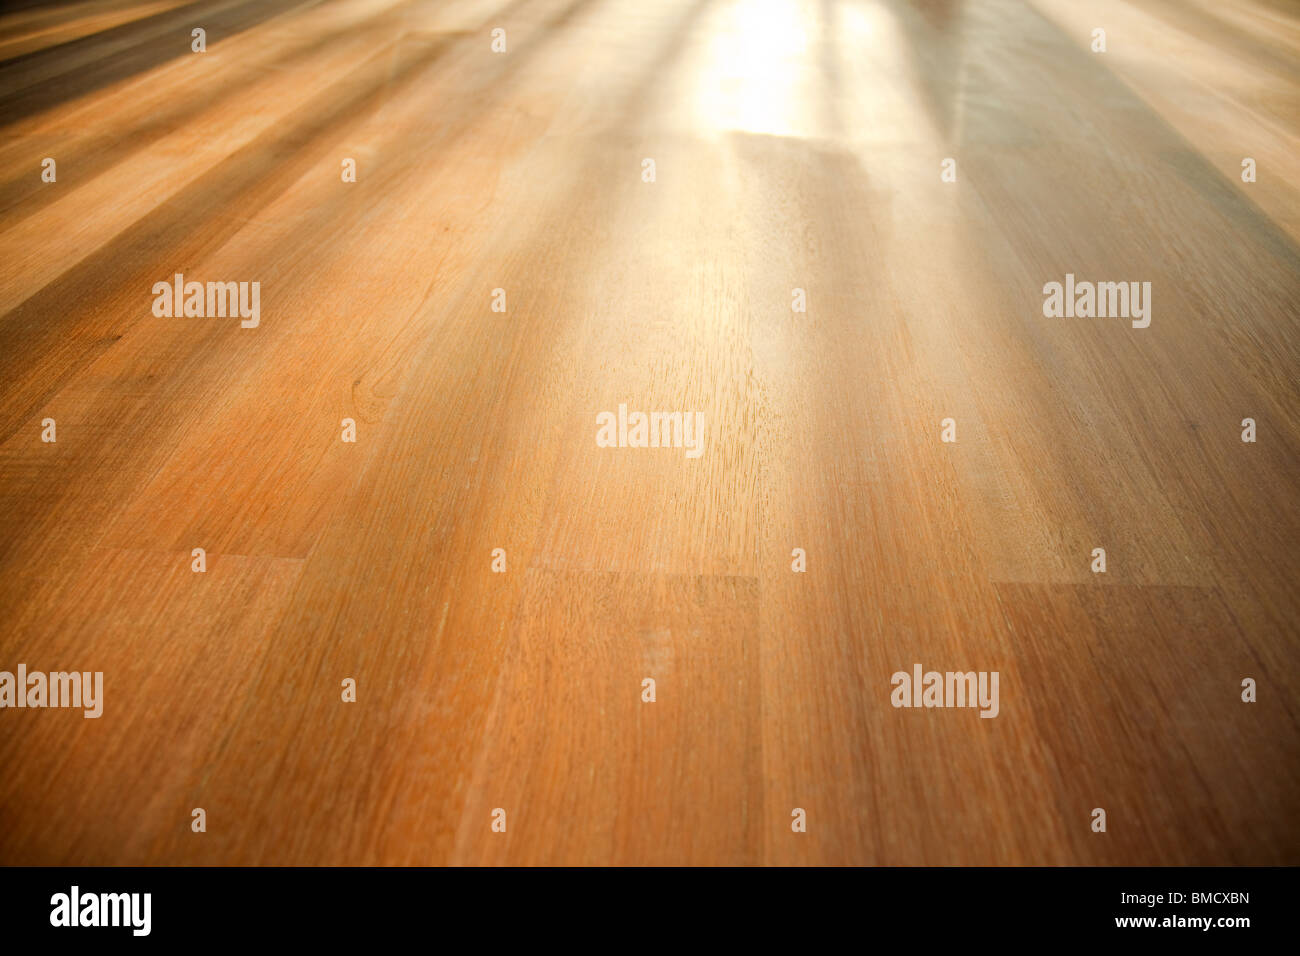 wooden floor Stock Photo